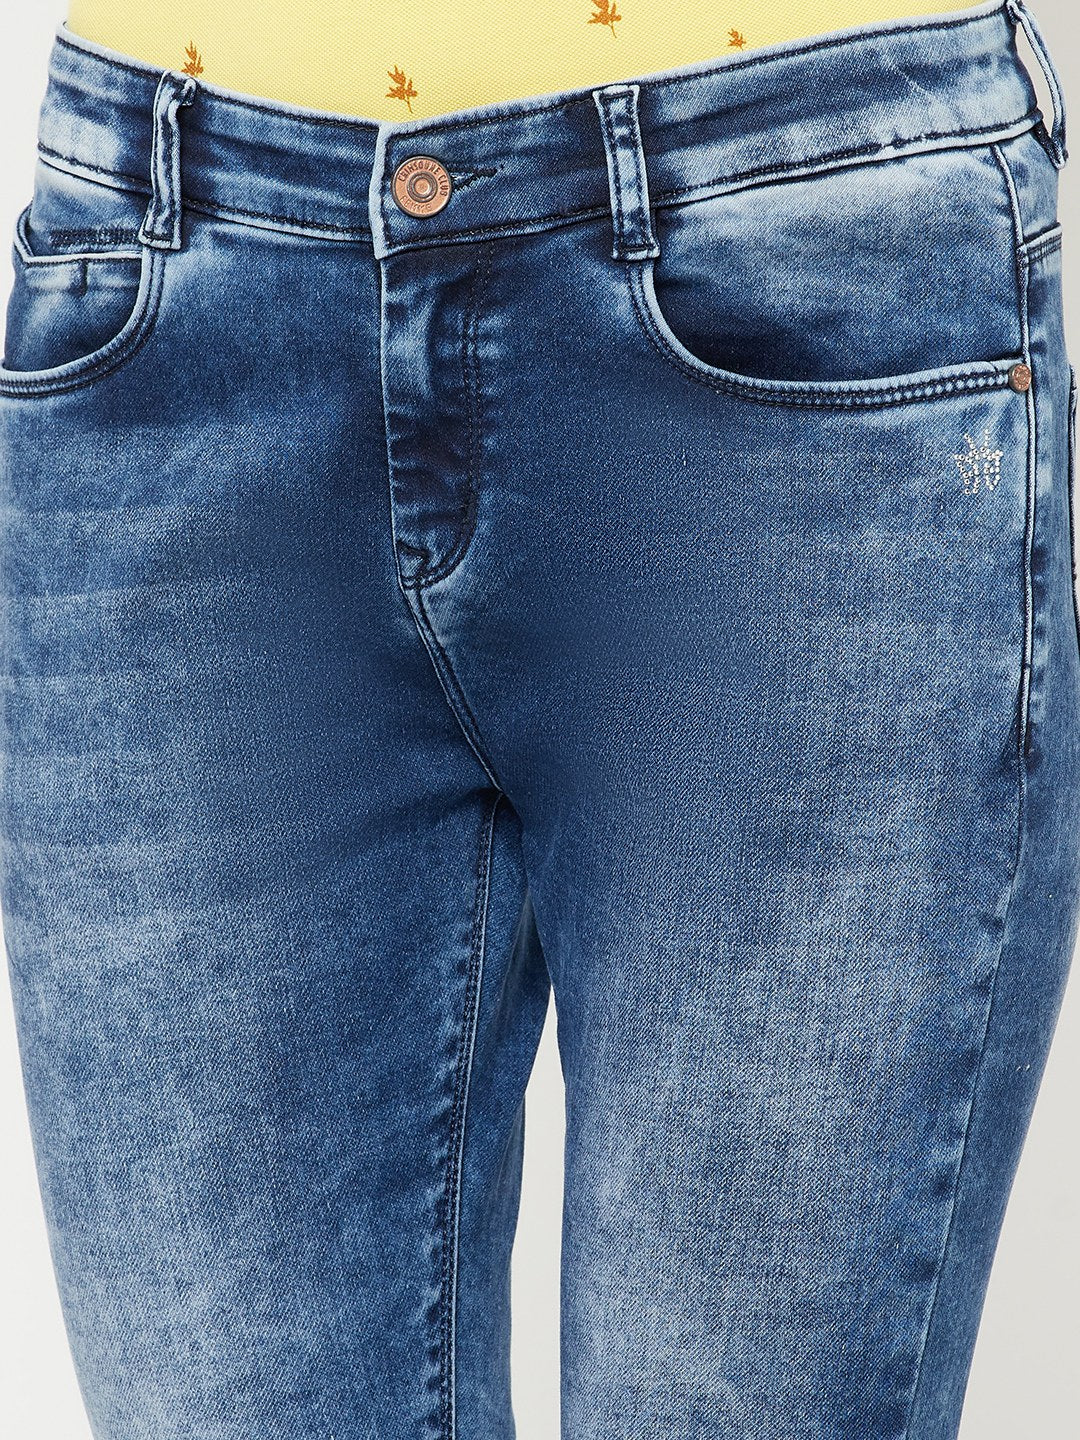 Blue Heavy Fade Jeans - Women Jeans